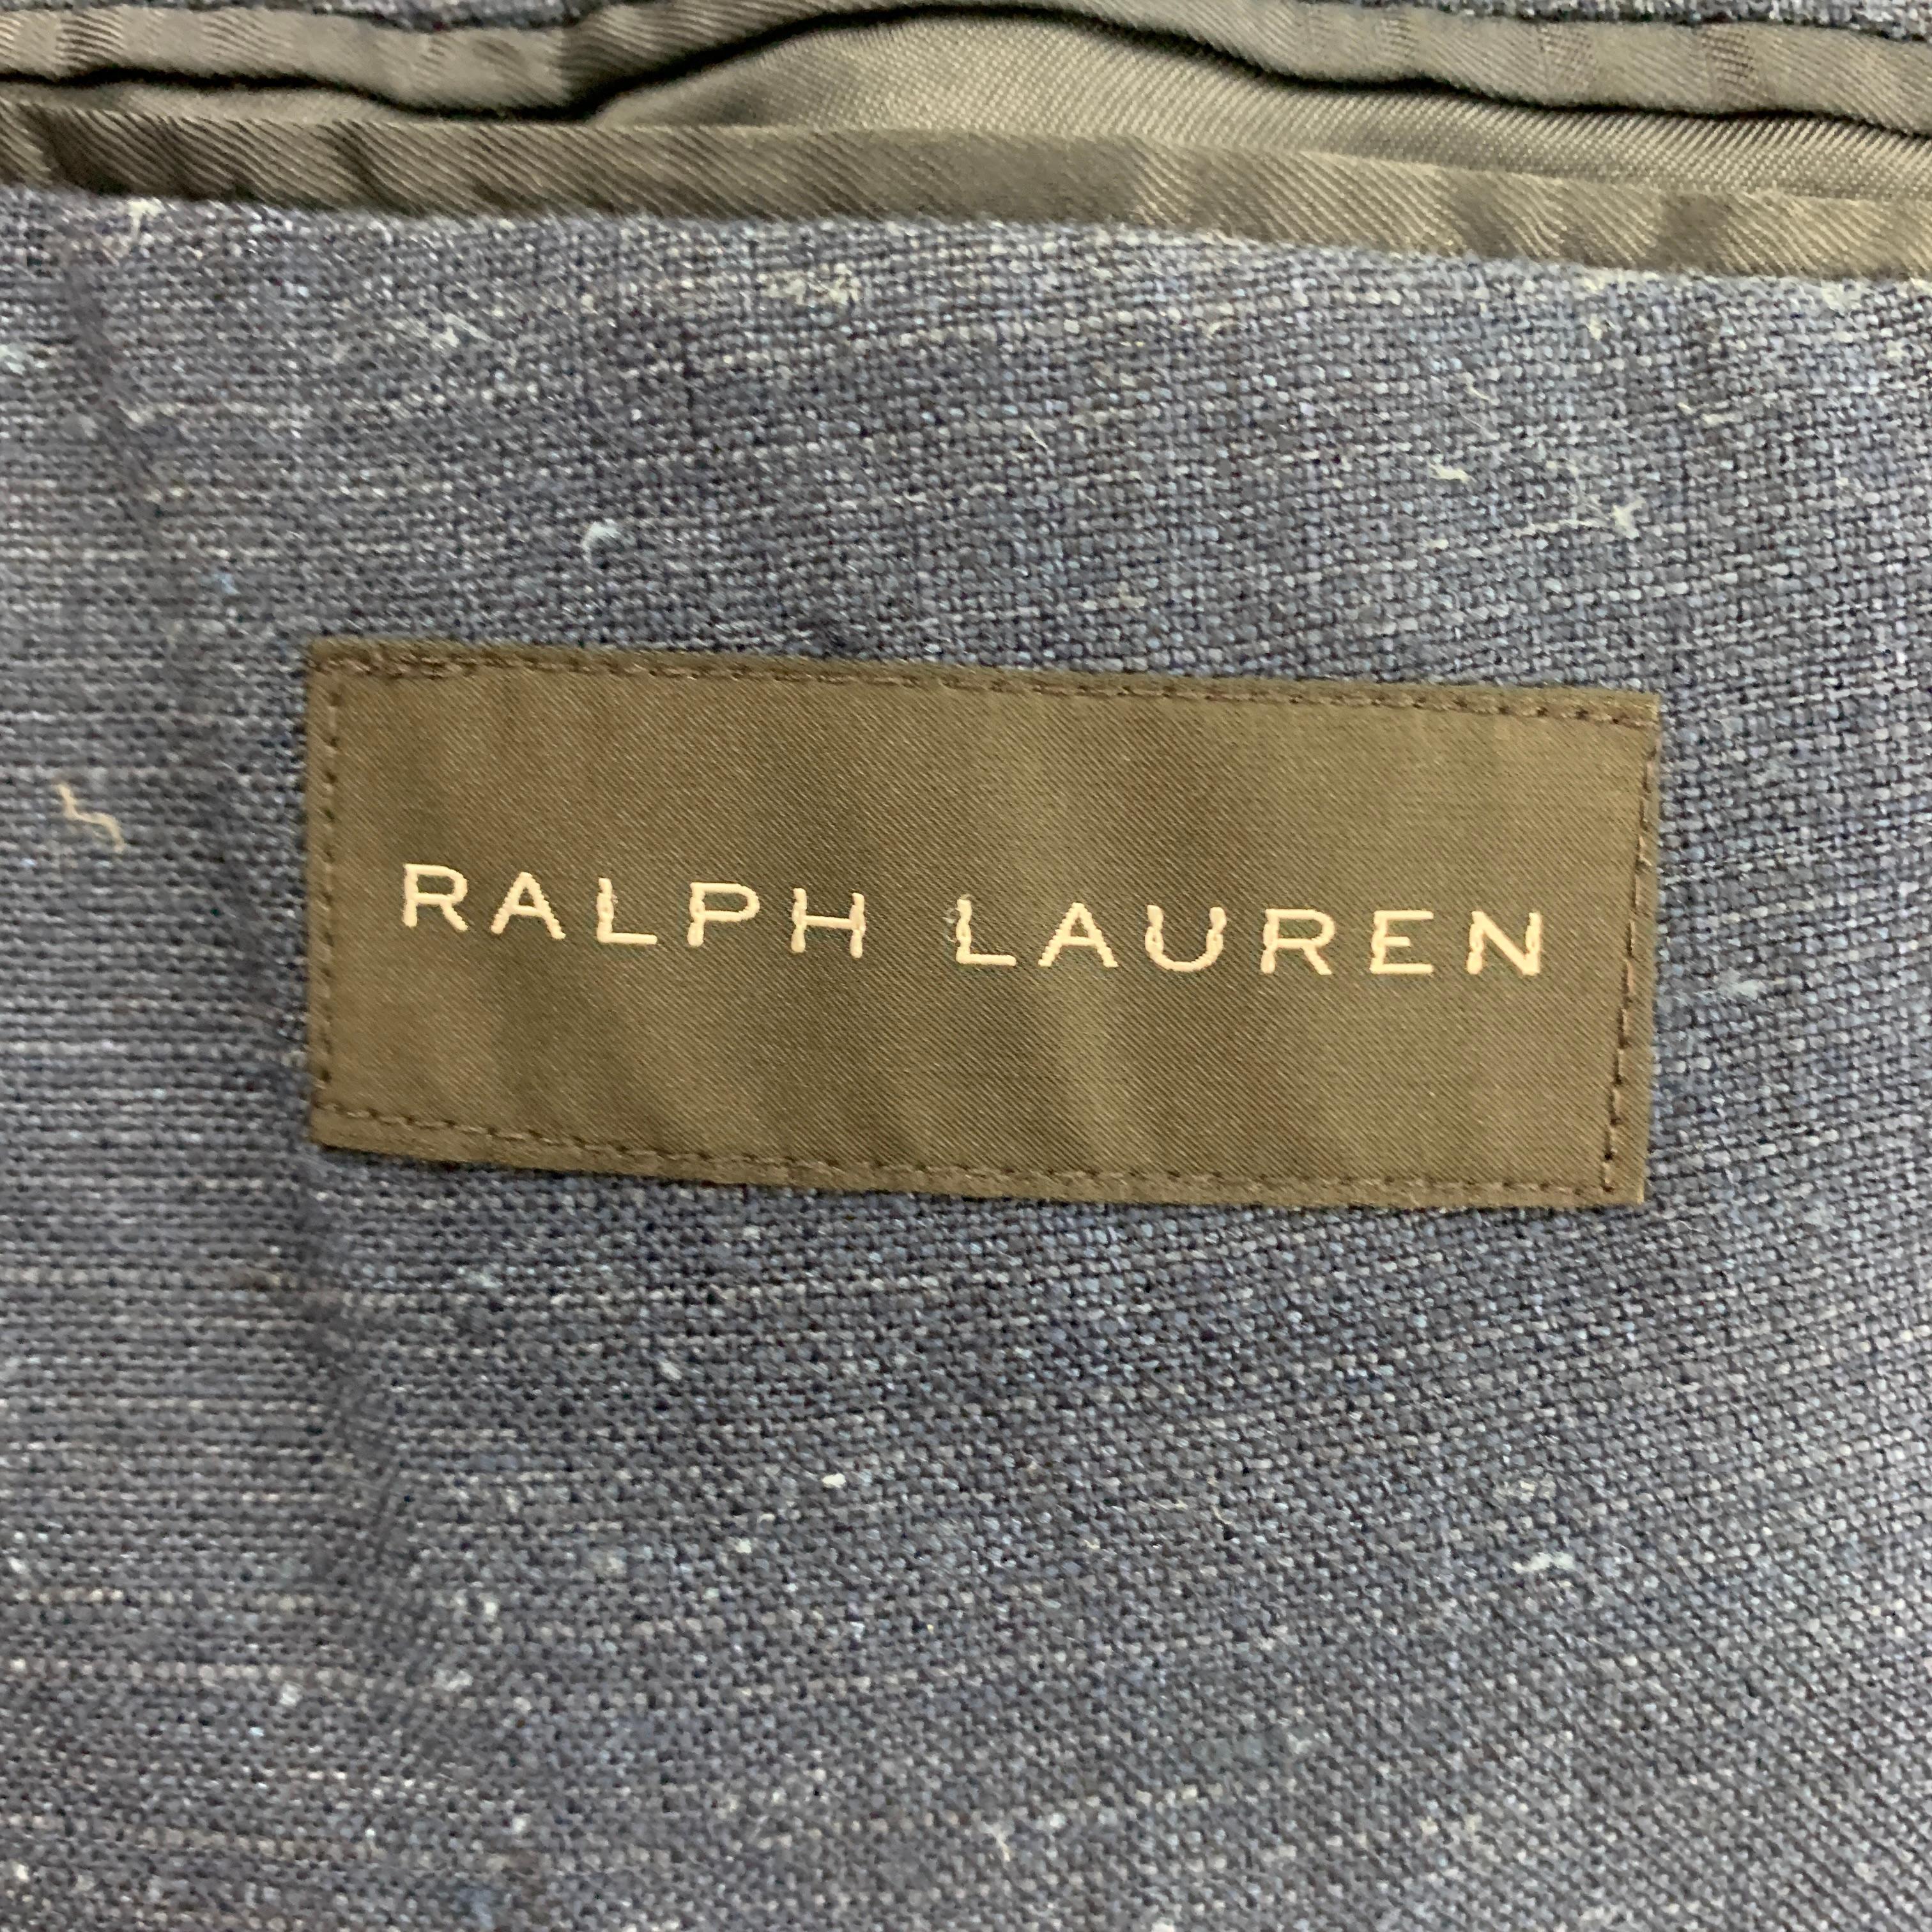 RALPH LAUREN Black Label Size 44 Indigo Textured Linen Silk Sport Coat 2